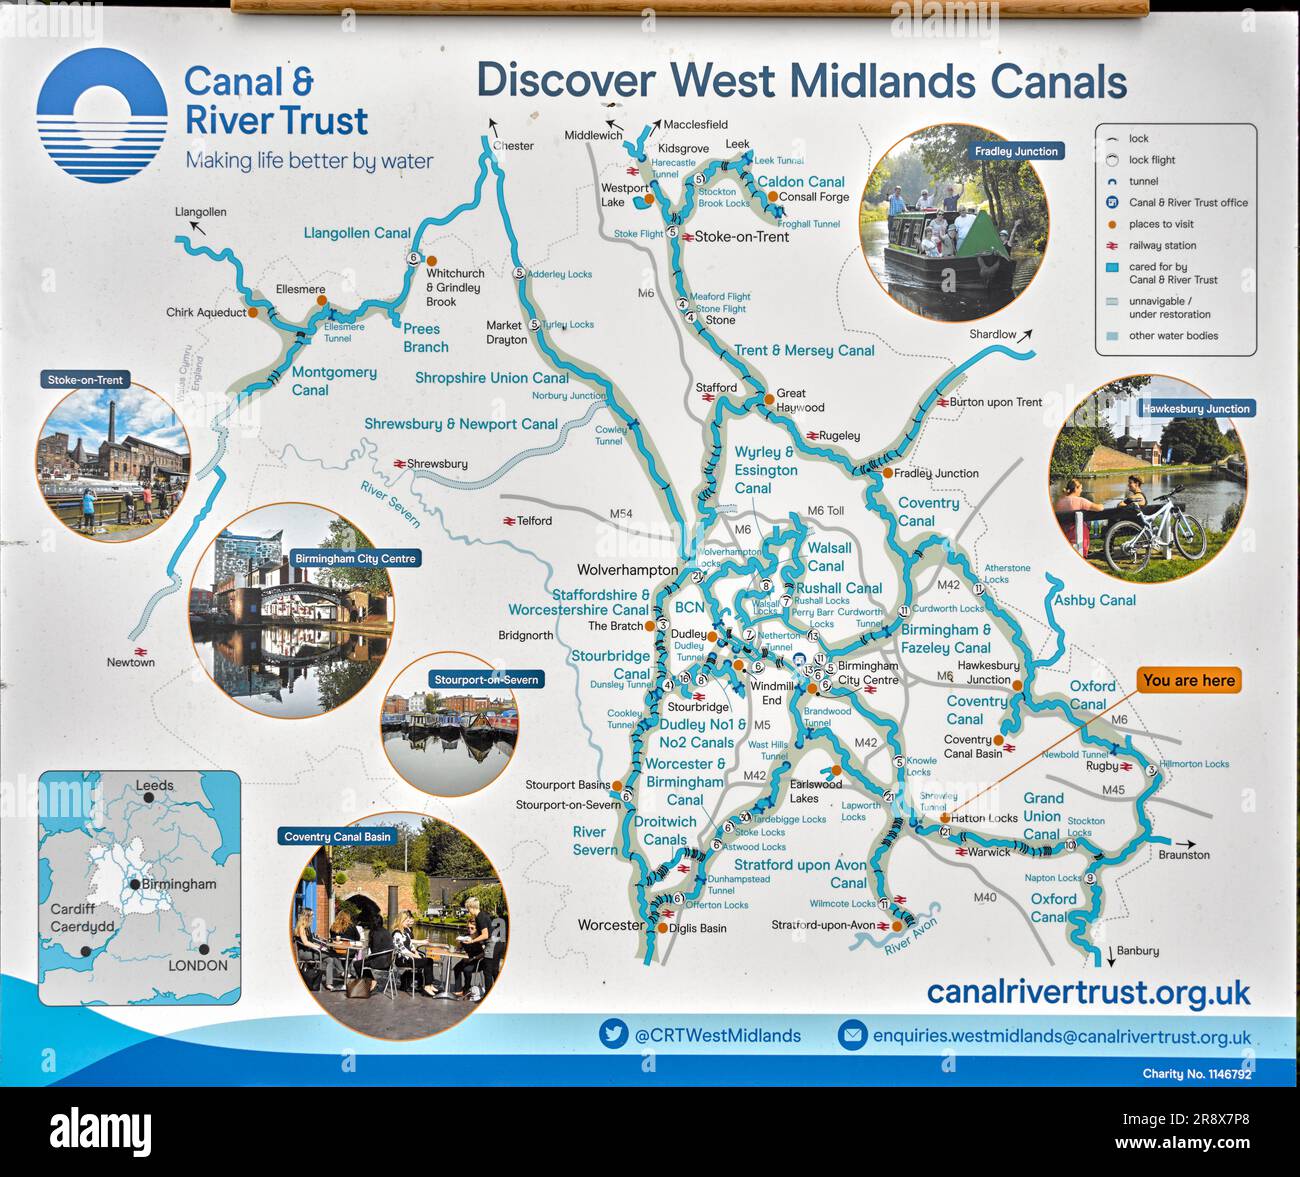 Mappa dei canali carta del Regno Unito e rotte di navigazione per i canali delle West Midlands a Hatton Locks Warwickshire Inghilterra Foto Stock